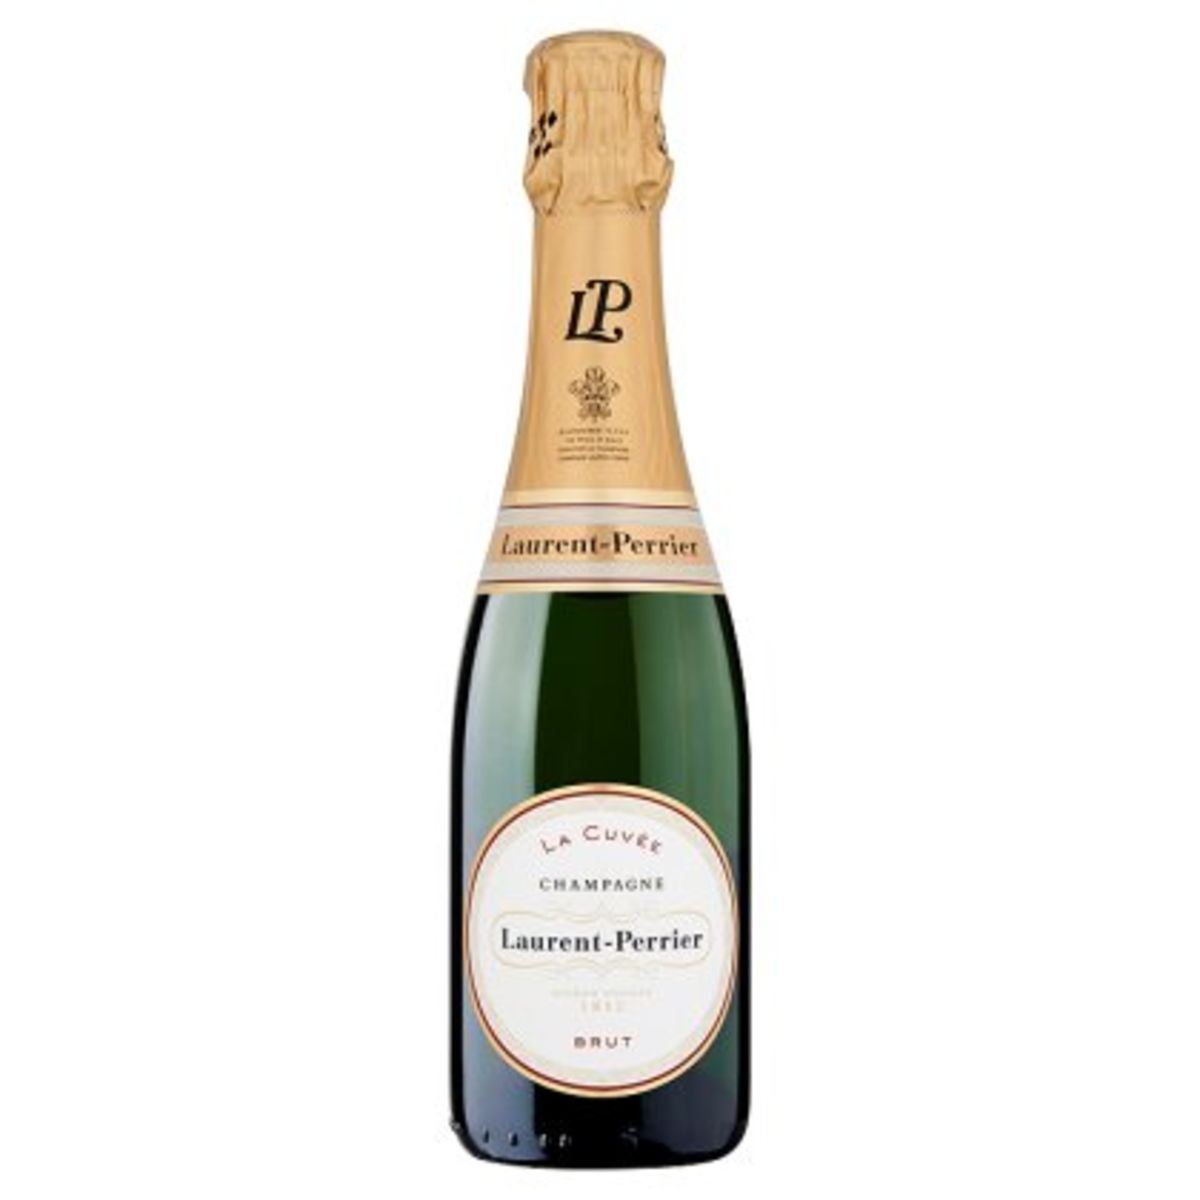 Laurent-Perrier La Cuvée Champagne Brut 375 ml